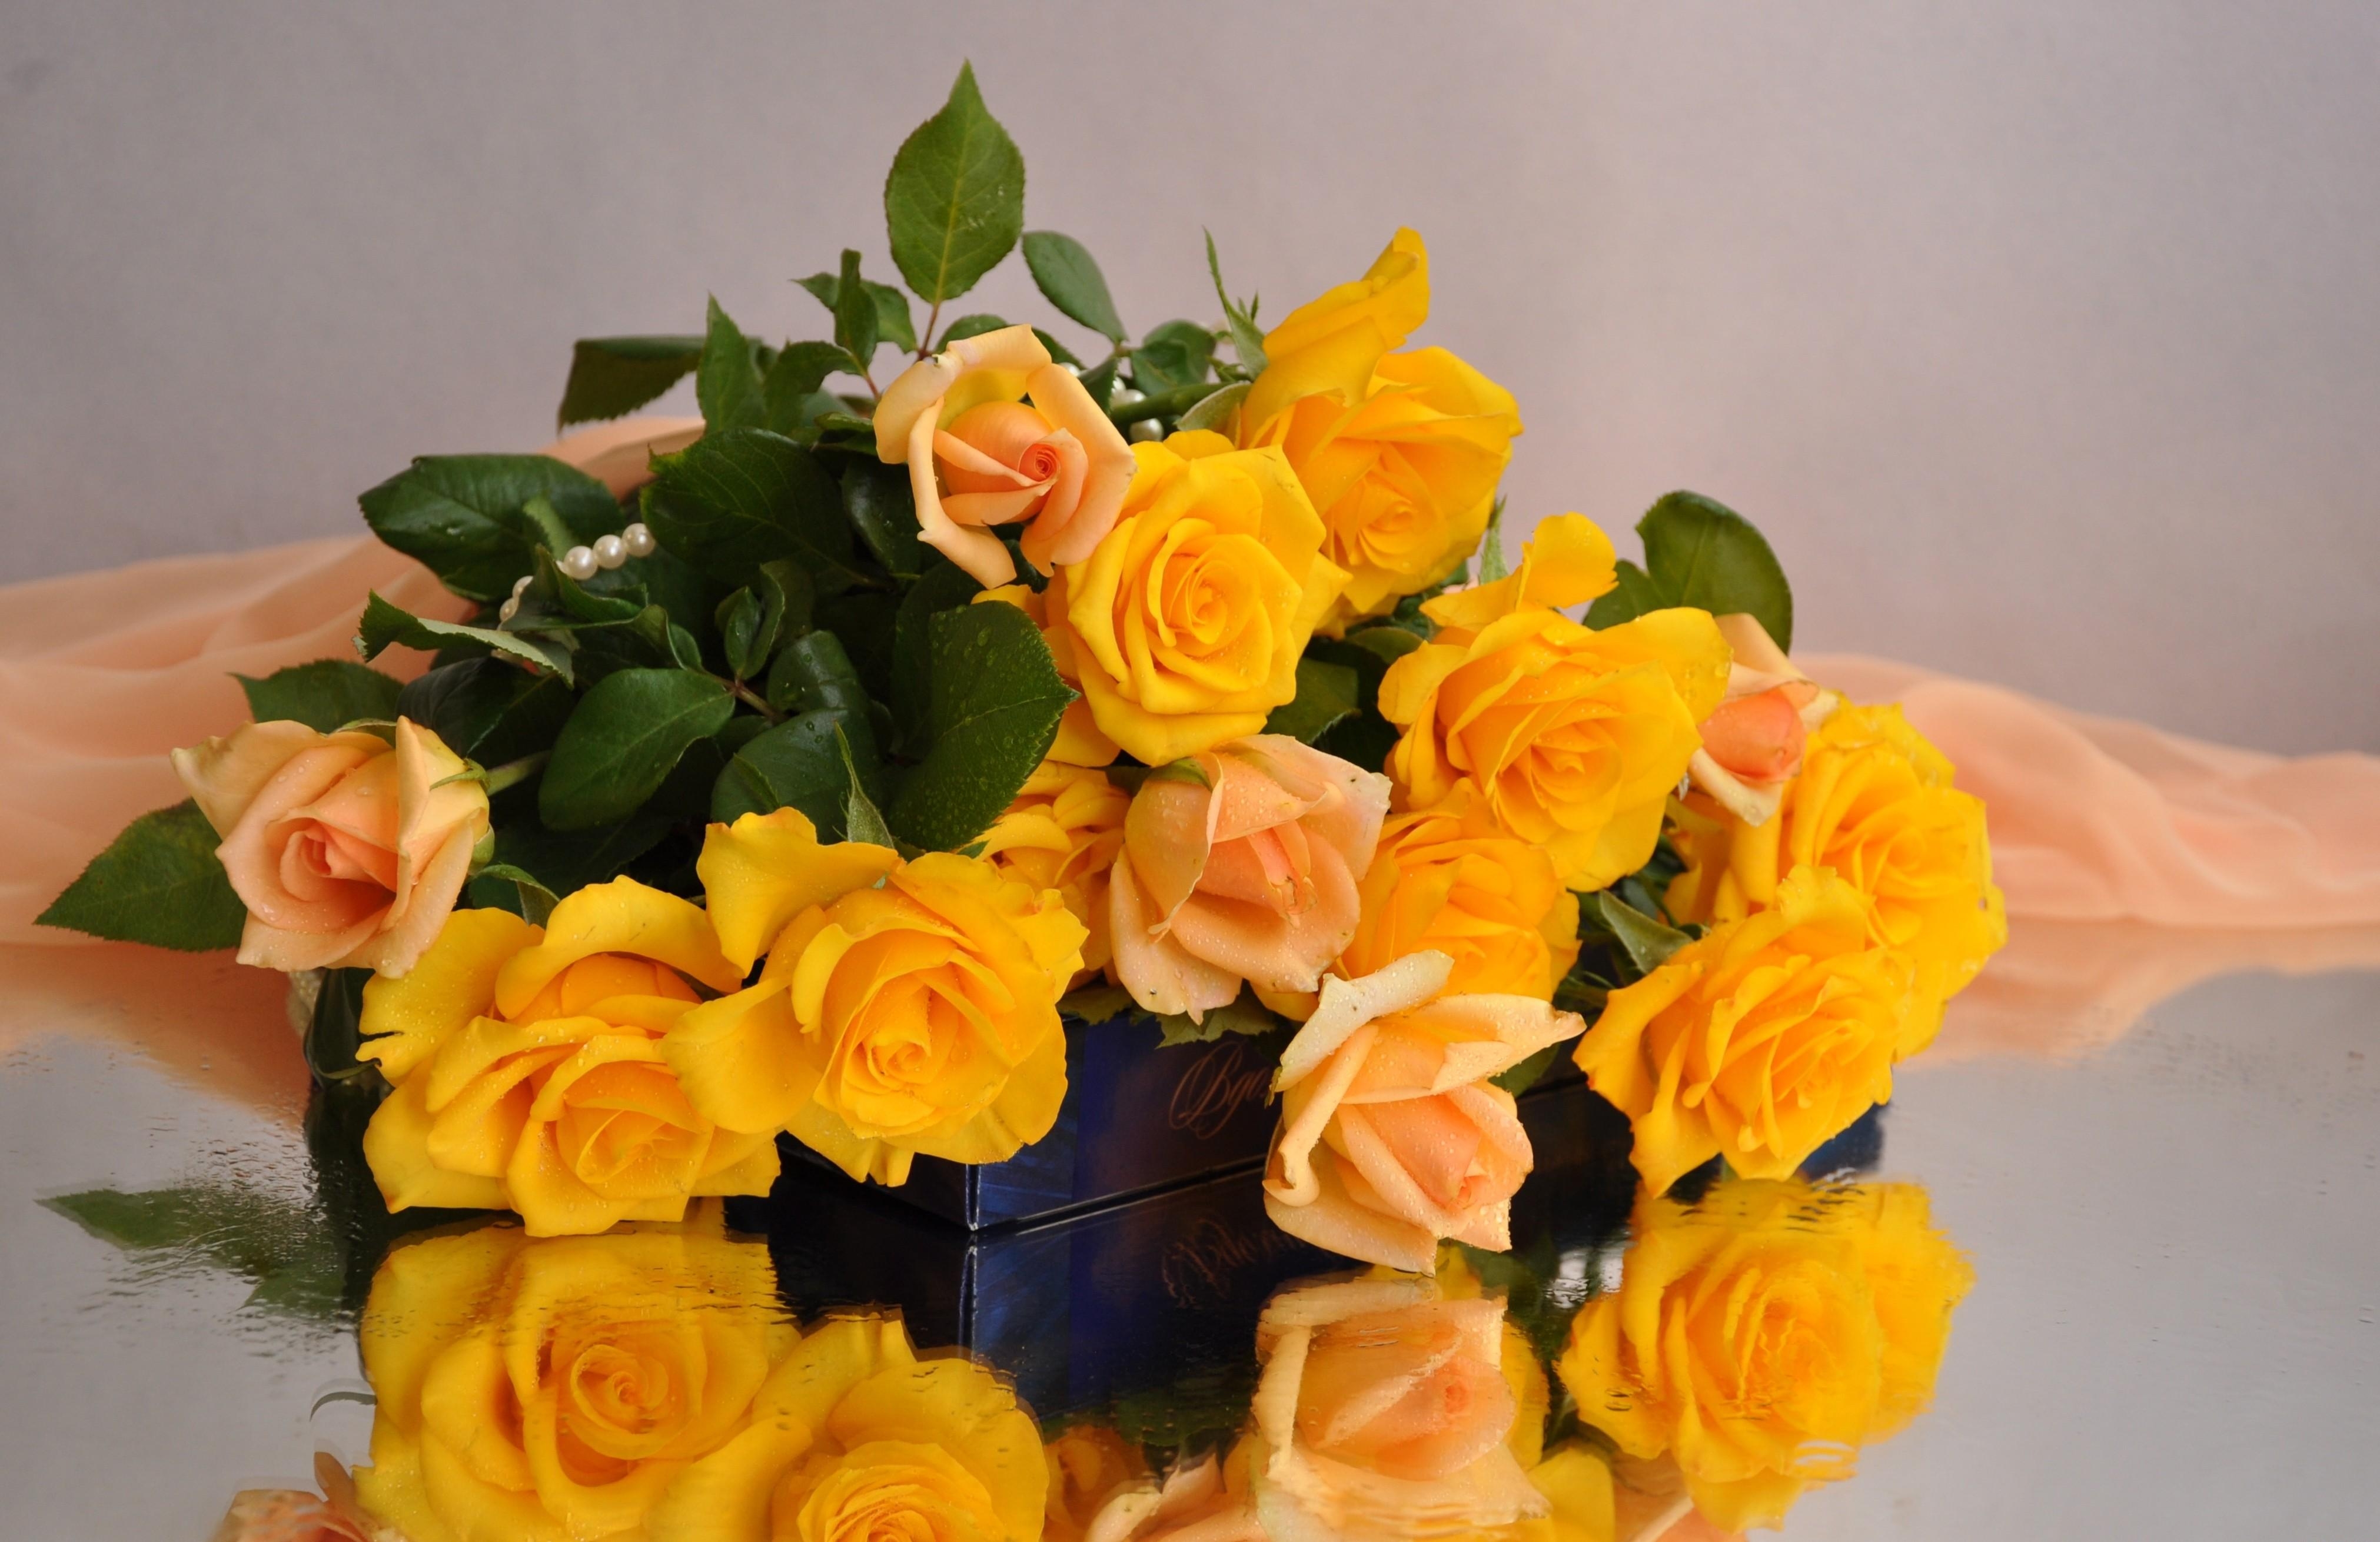 Скачать обои бесплатно Отражение, Цветок, Роза, Желтый Цветок, Сделано Человеком, Персиковый Цветок картинка на рабочий стол ПК